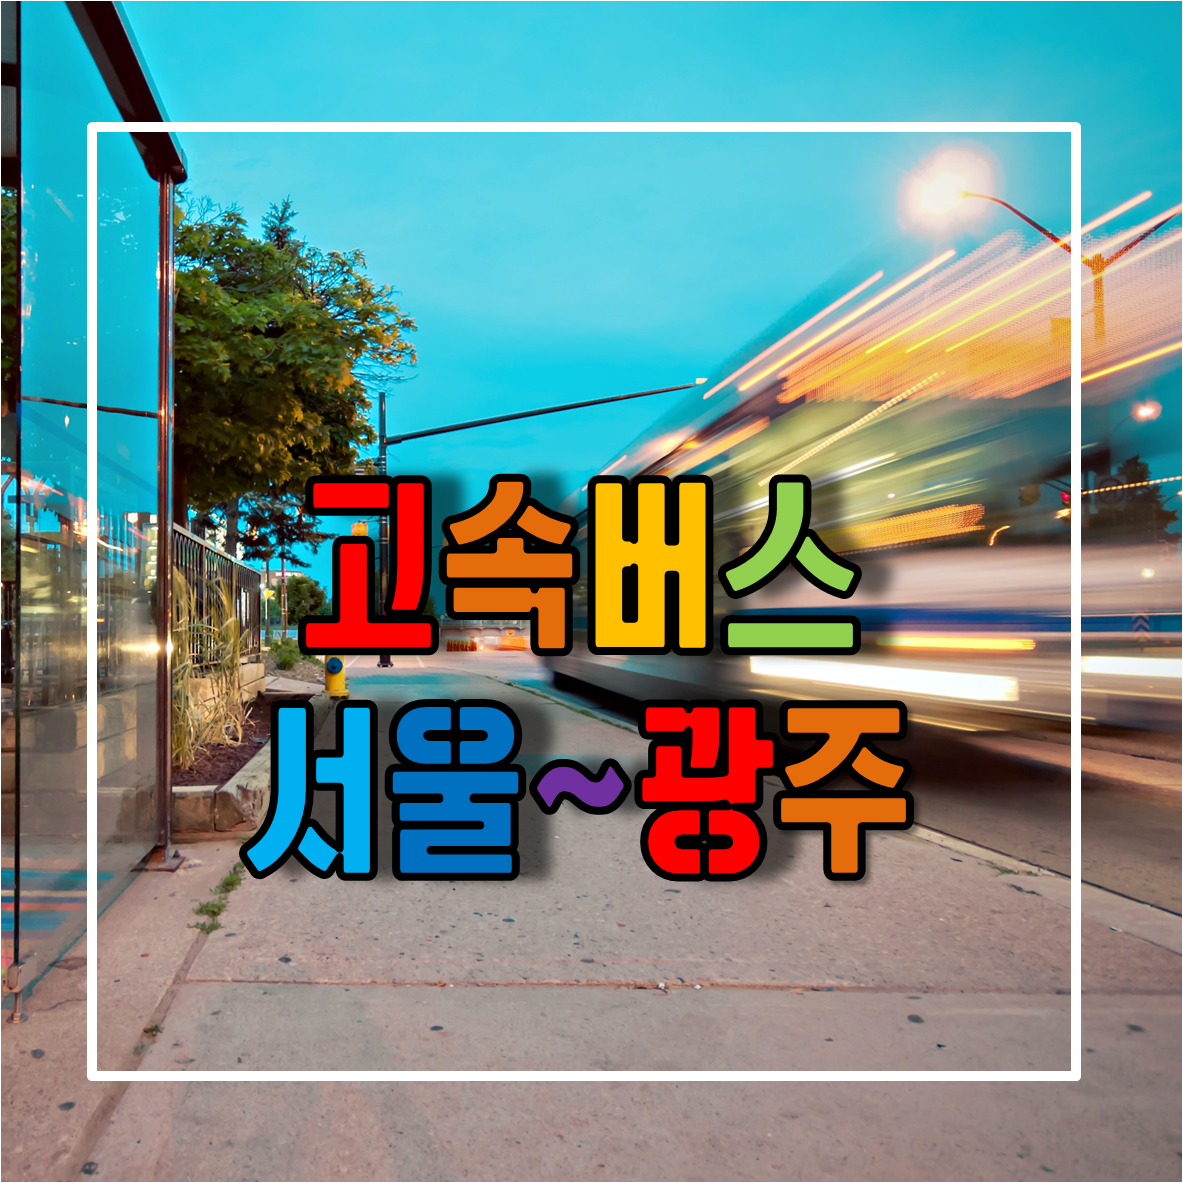 서울에서 전라도 광주가는 고속버스 시간표